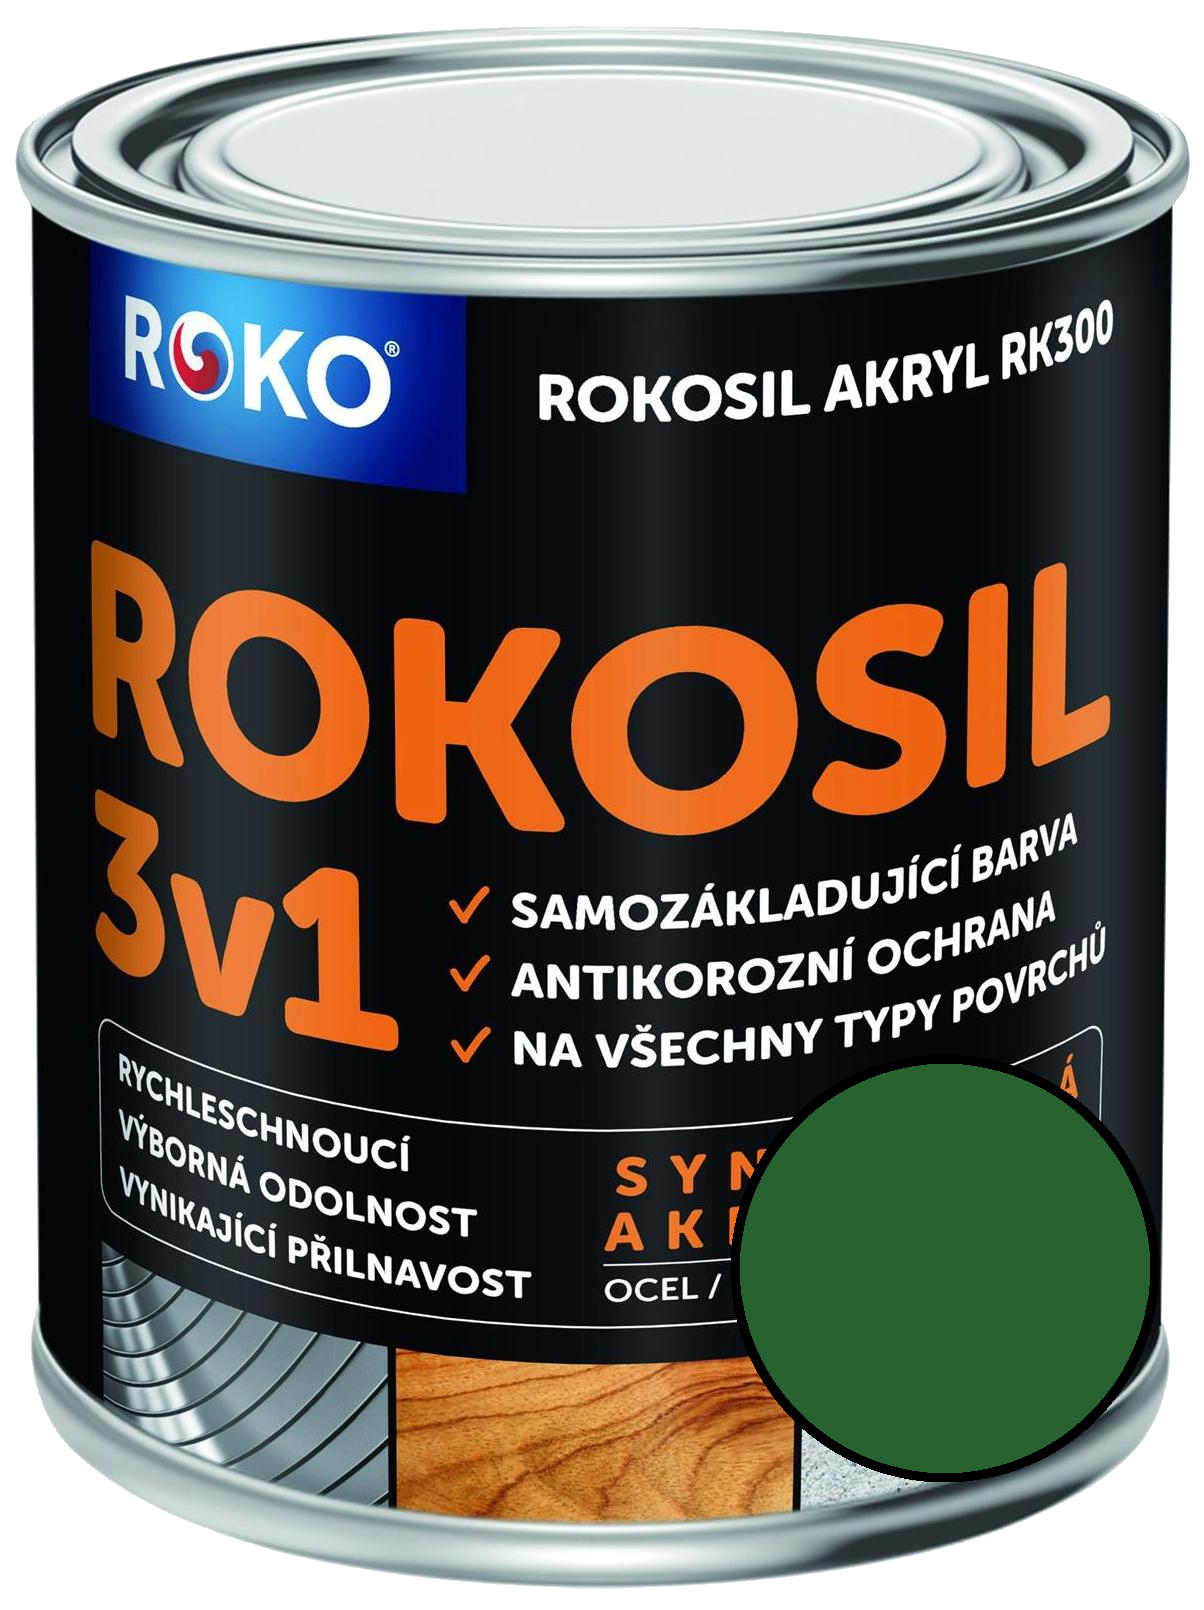 Barva samozákladující Rokosil akryl 3v1 RK 300 5300 zelená střední